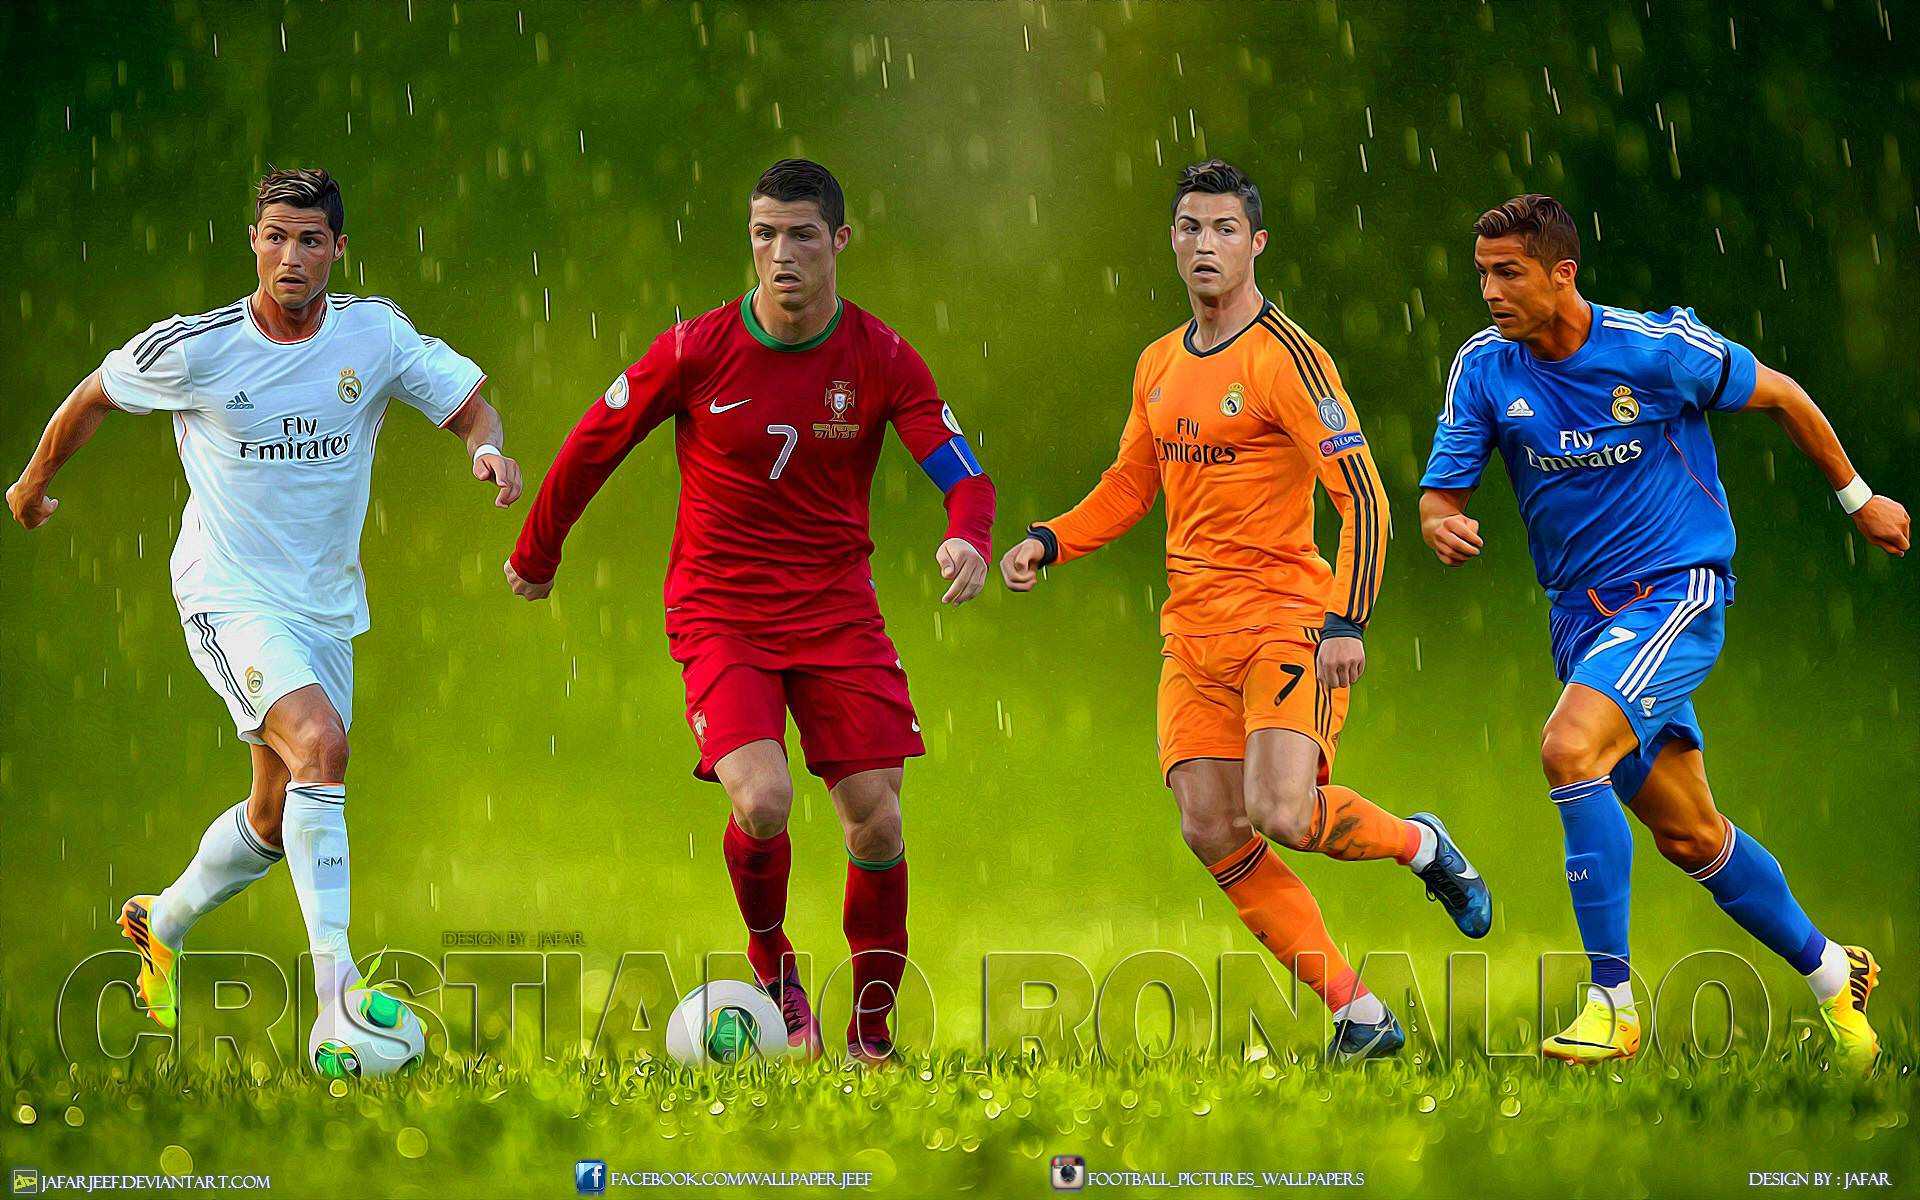 Cool Cristiano Ronaldo Portugal And Real Madri Wallpaper